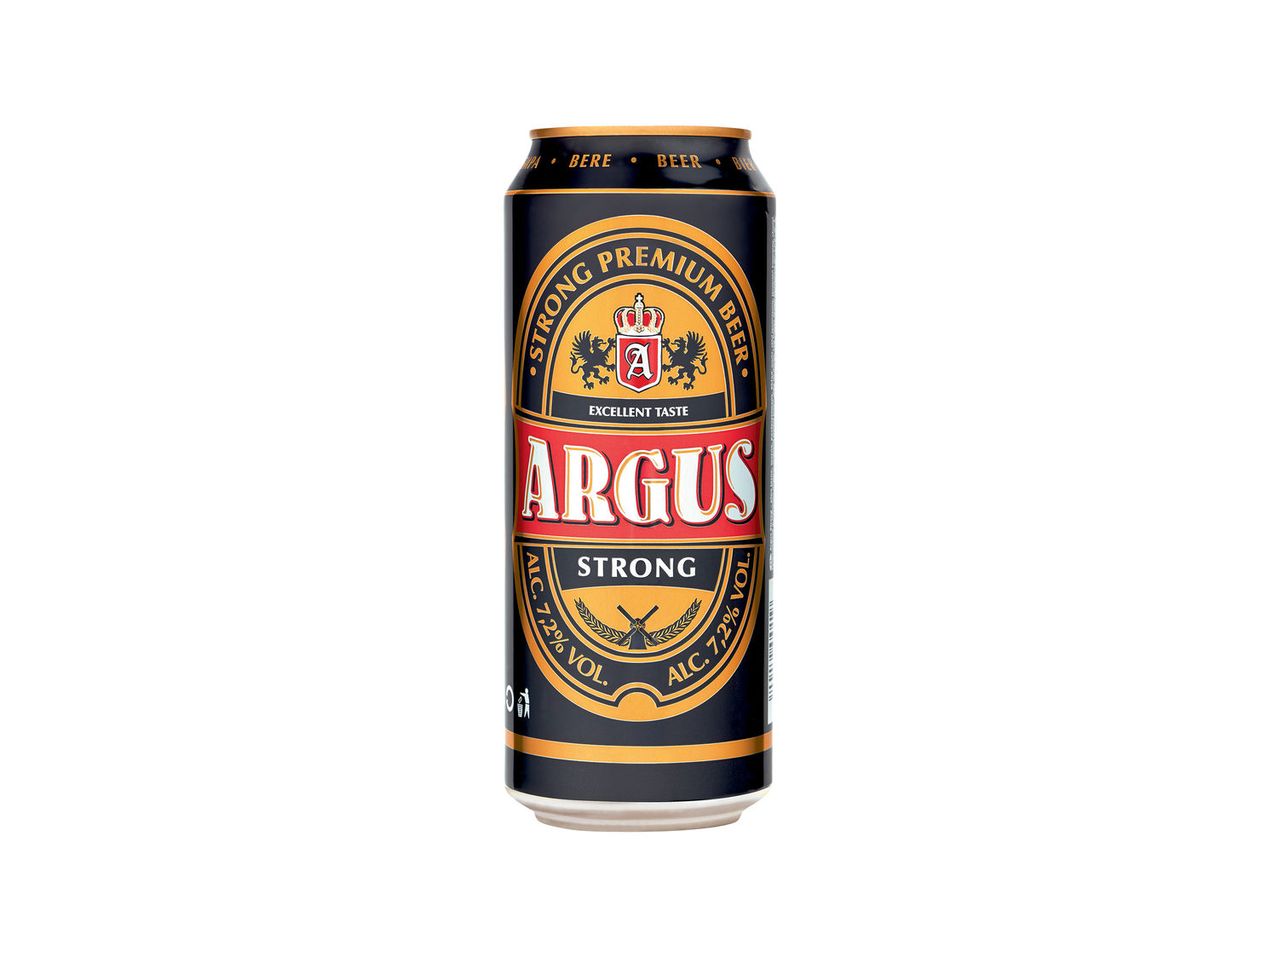 Accesați vizualizarea pe ecran complet: Argus Strong – bere blondă, alc. 7.2% vol. - Imagine 1